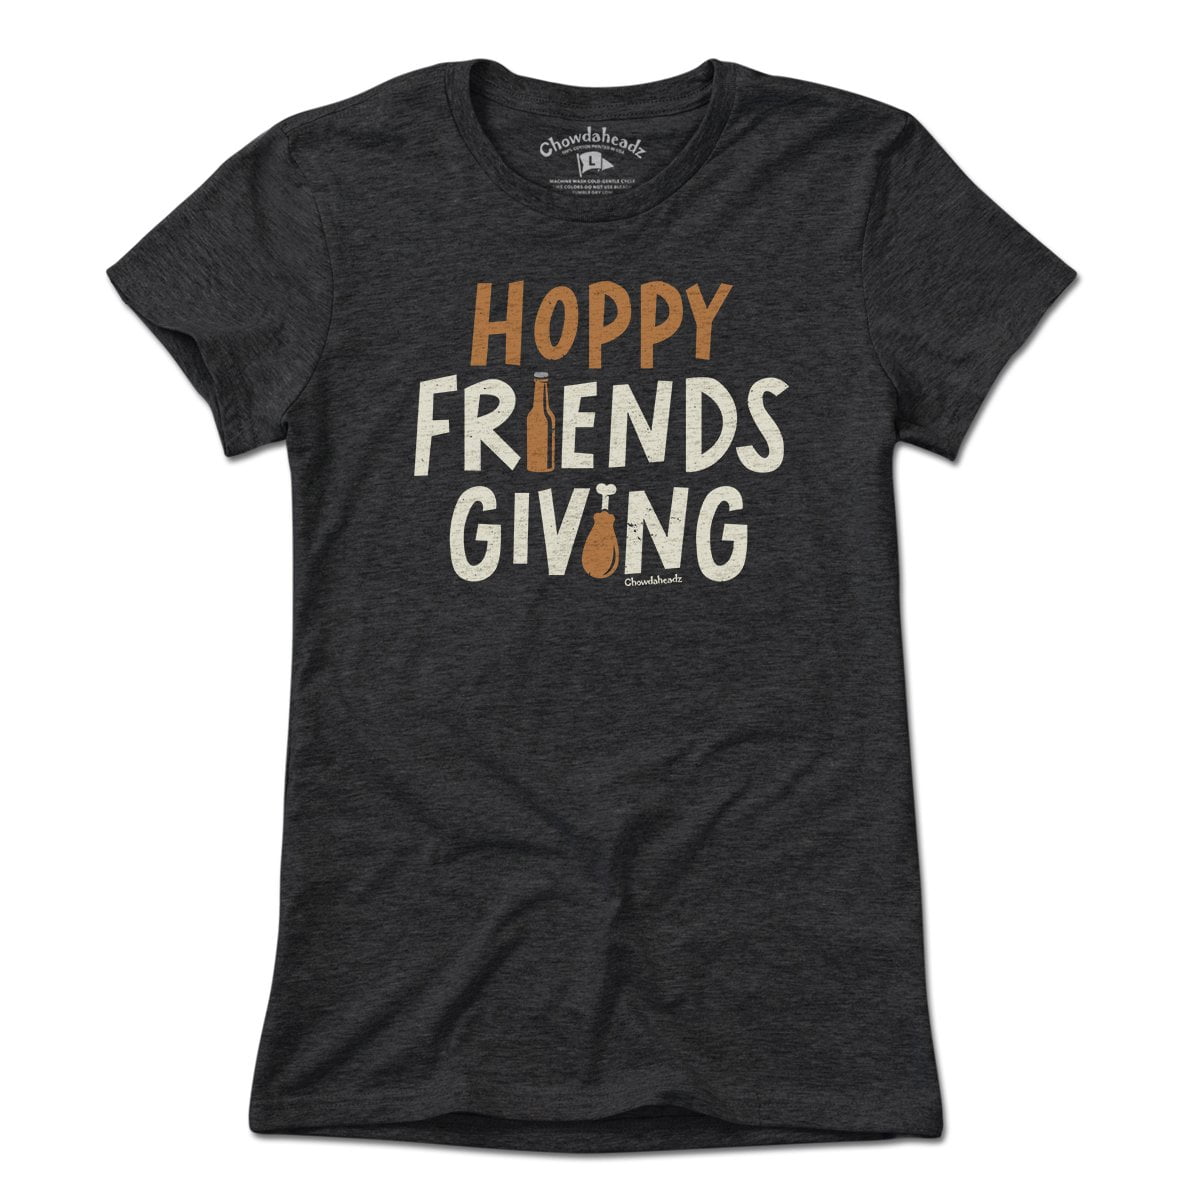 Hoppy Friends Giving T-shirt - Chowdaheadz